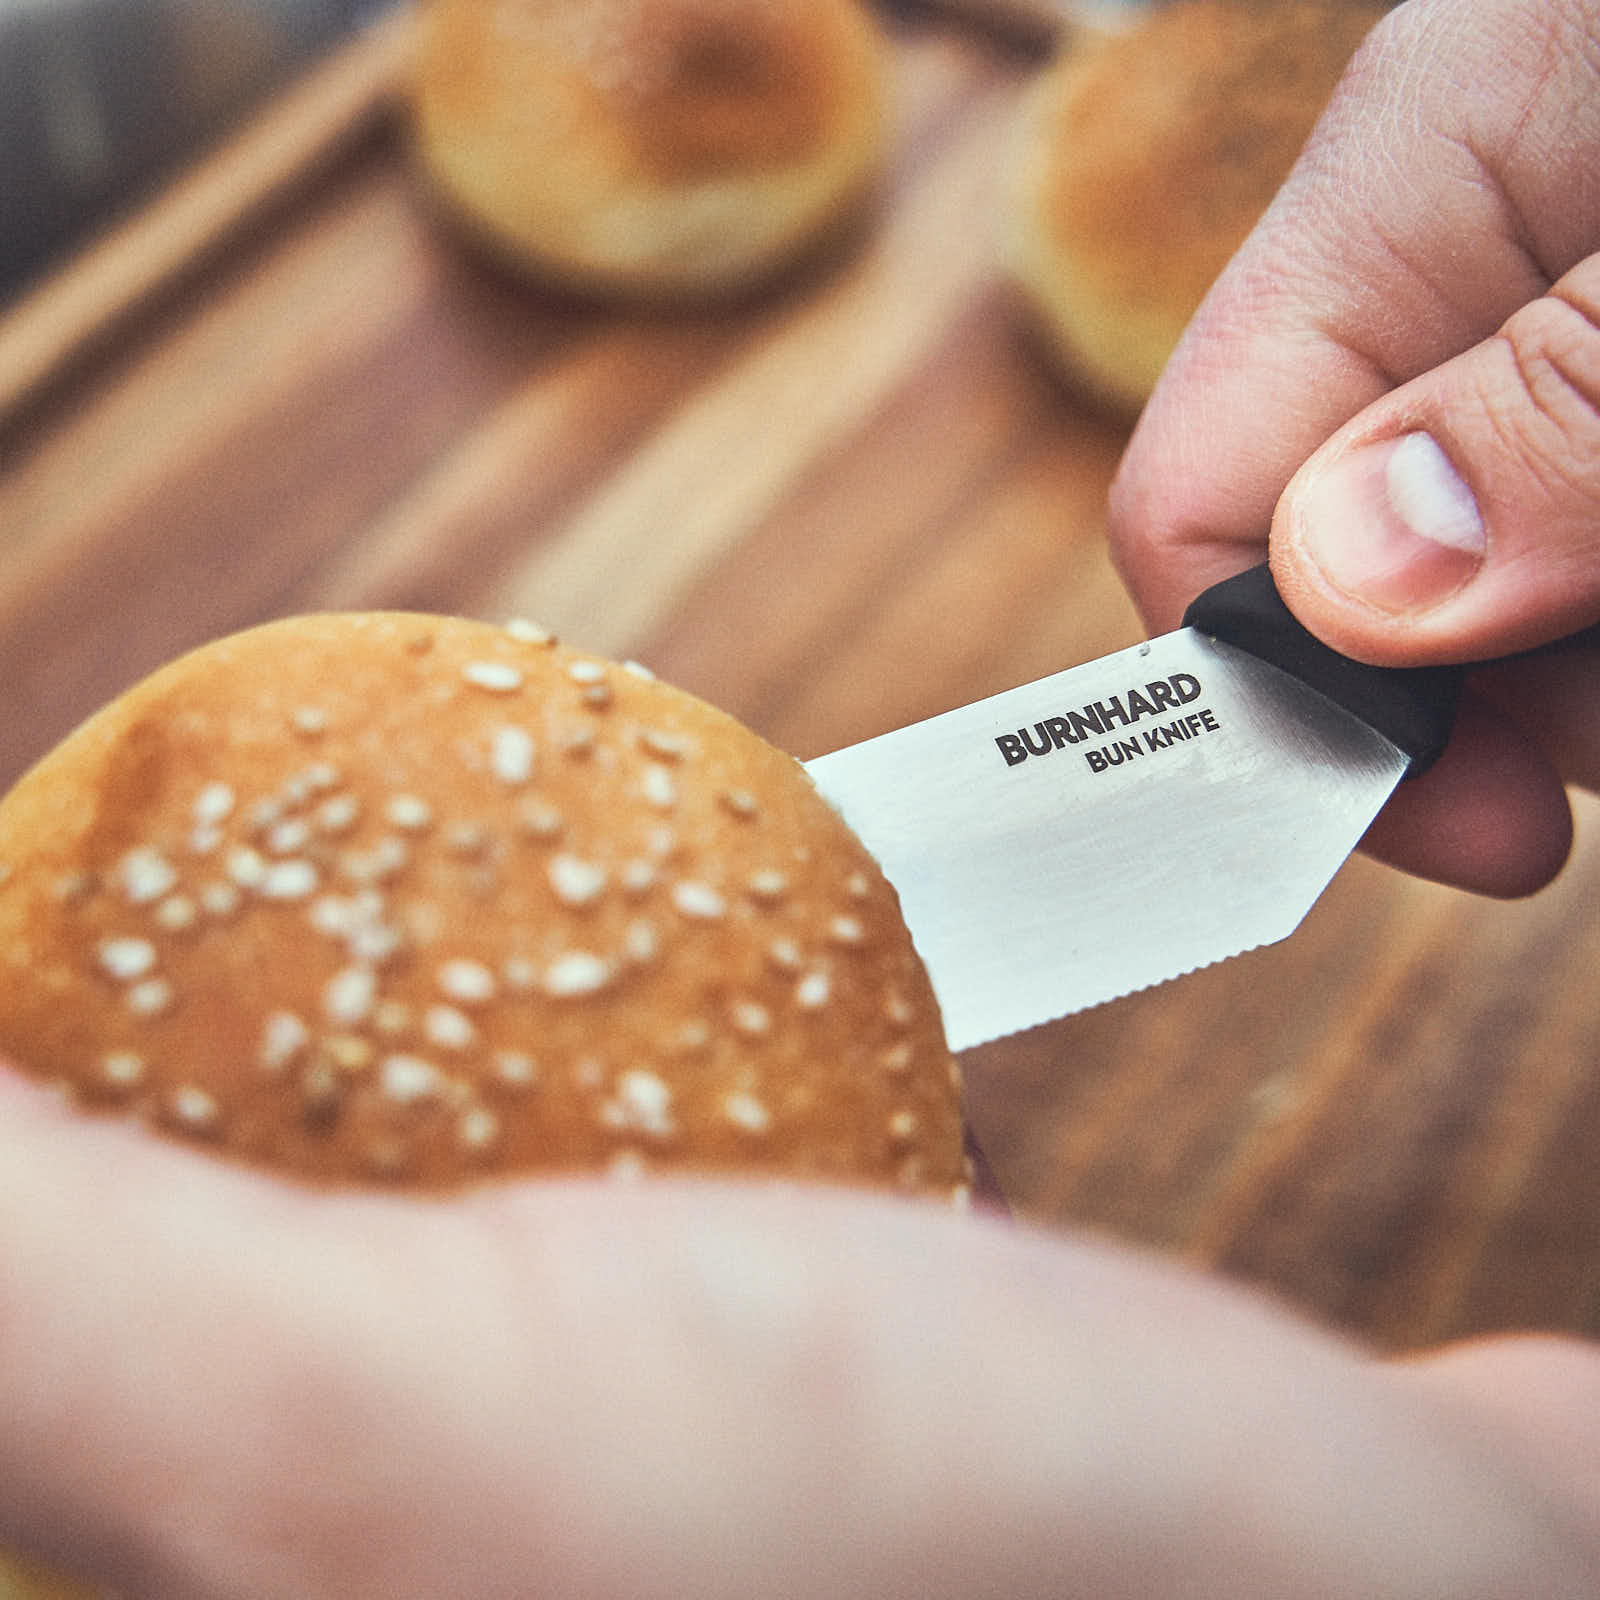 Mit dem Brötchenmesser wird ein Burger-Bun aufgeschnitten